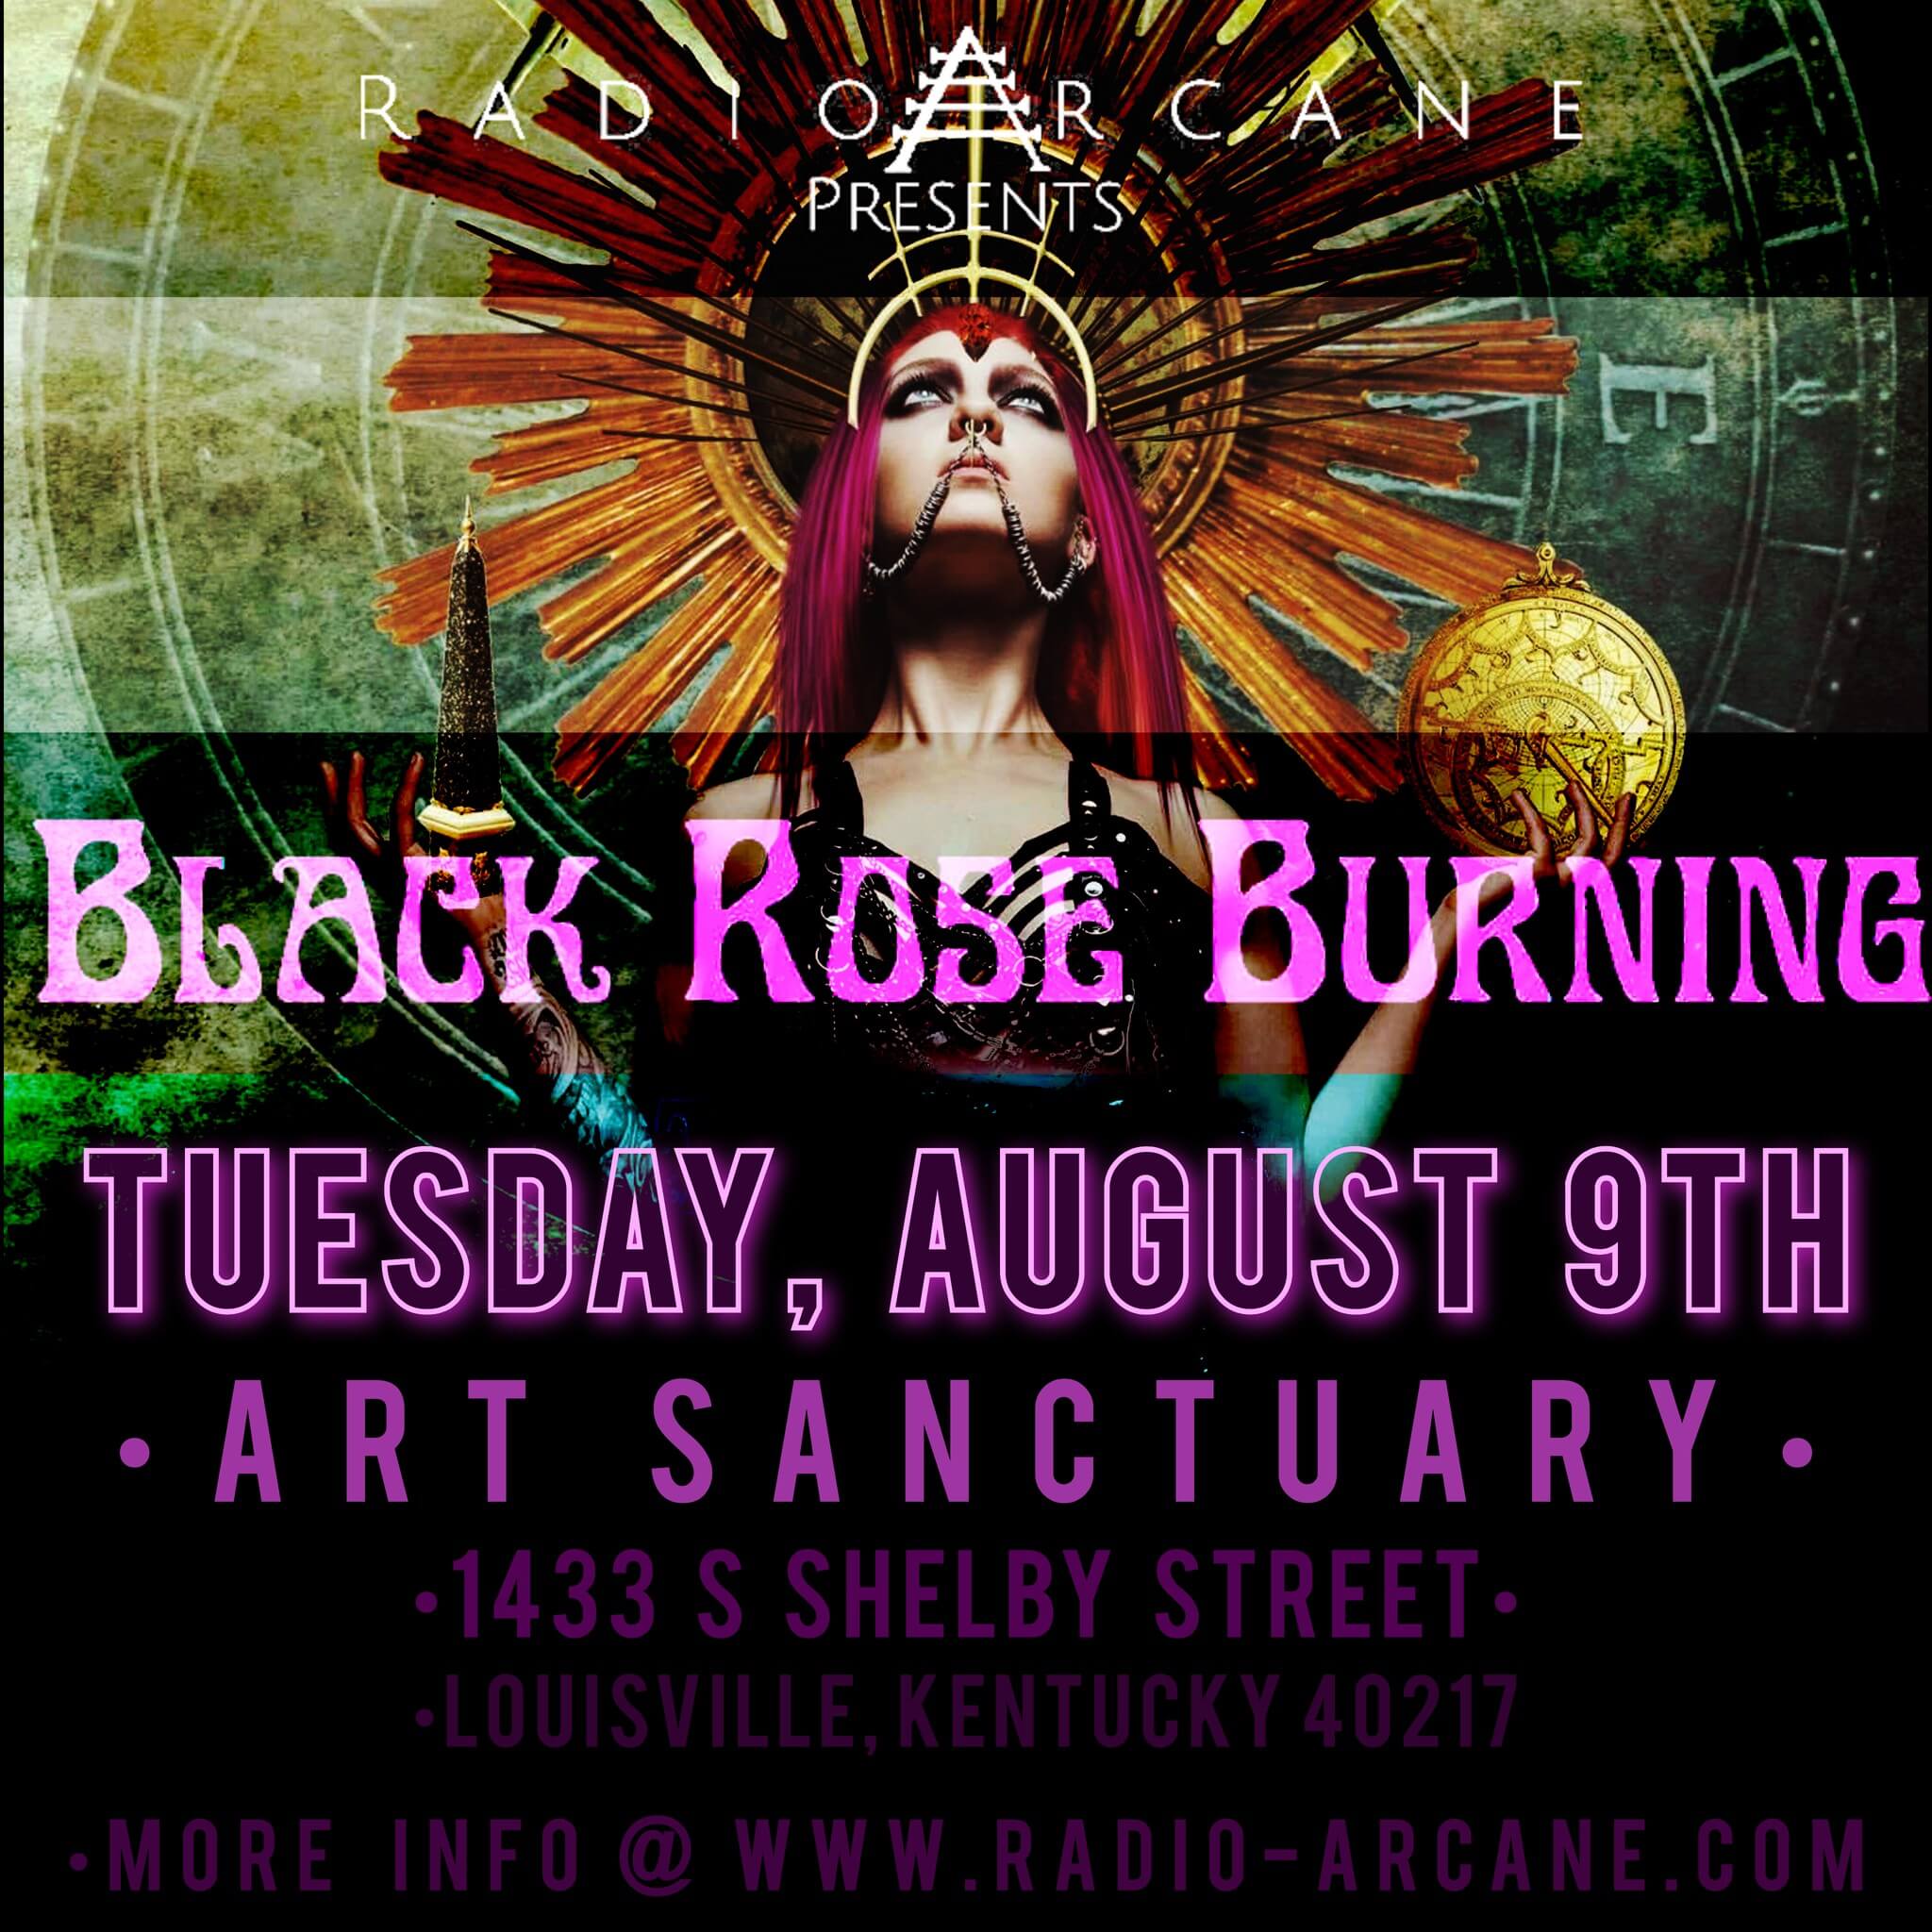 Black Rose Burning live at Art Sanctuary